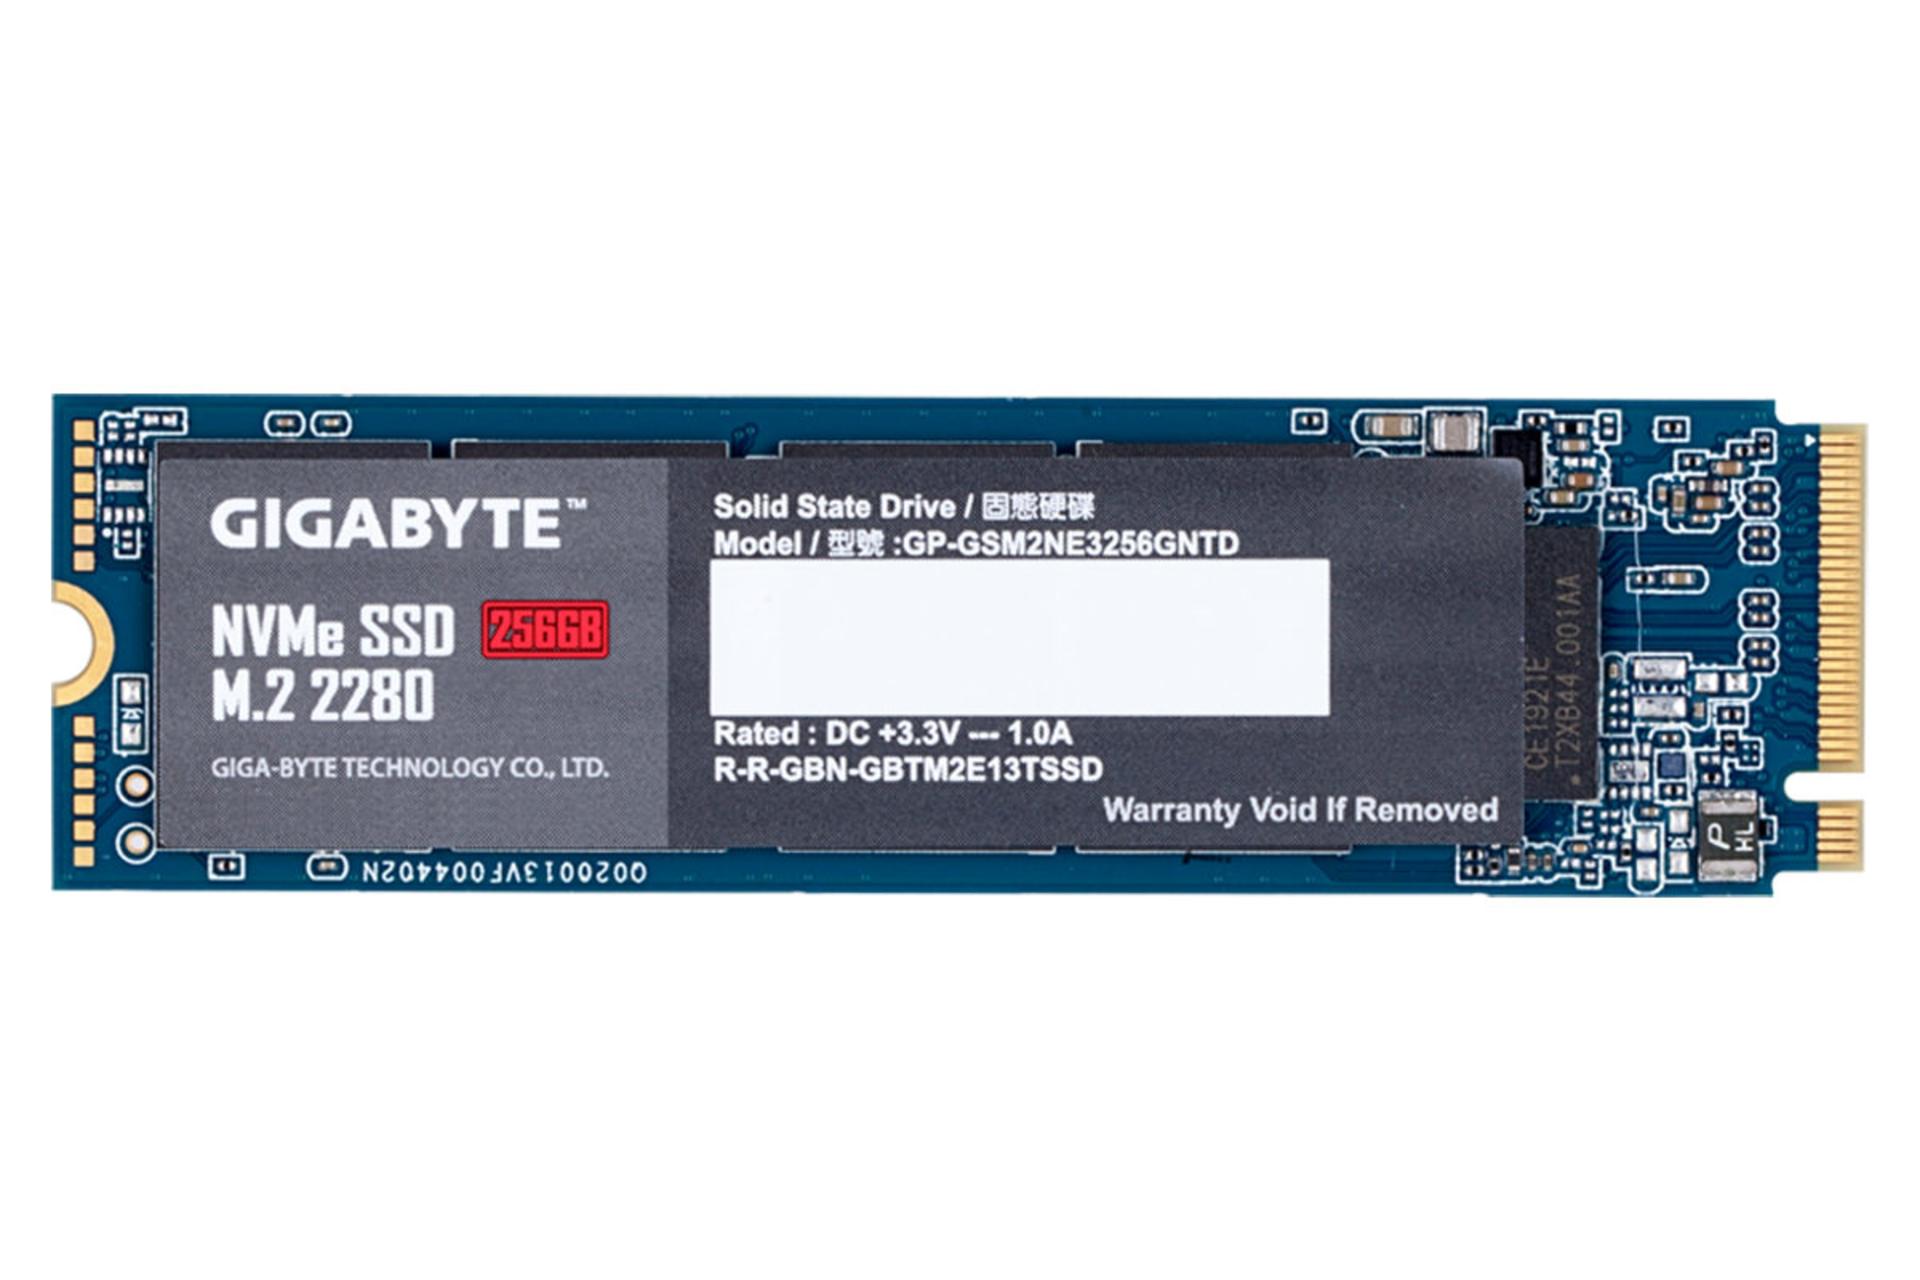 مرجع متخصصين ايران نماي روبرو SSD گيگابايت NVMe M.2 ظرفيت 256 گيگابايت